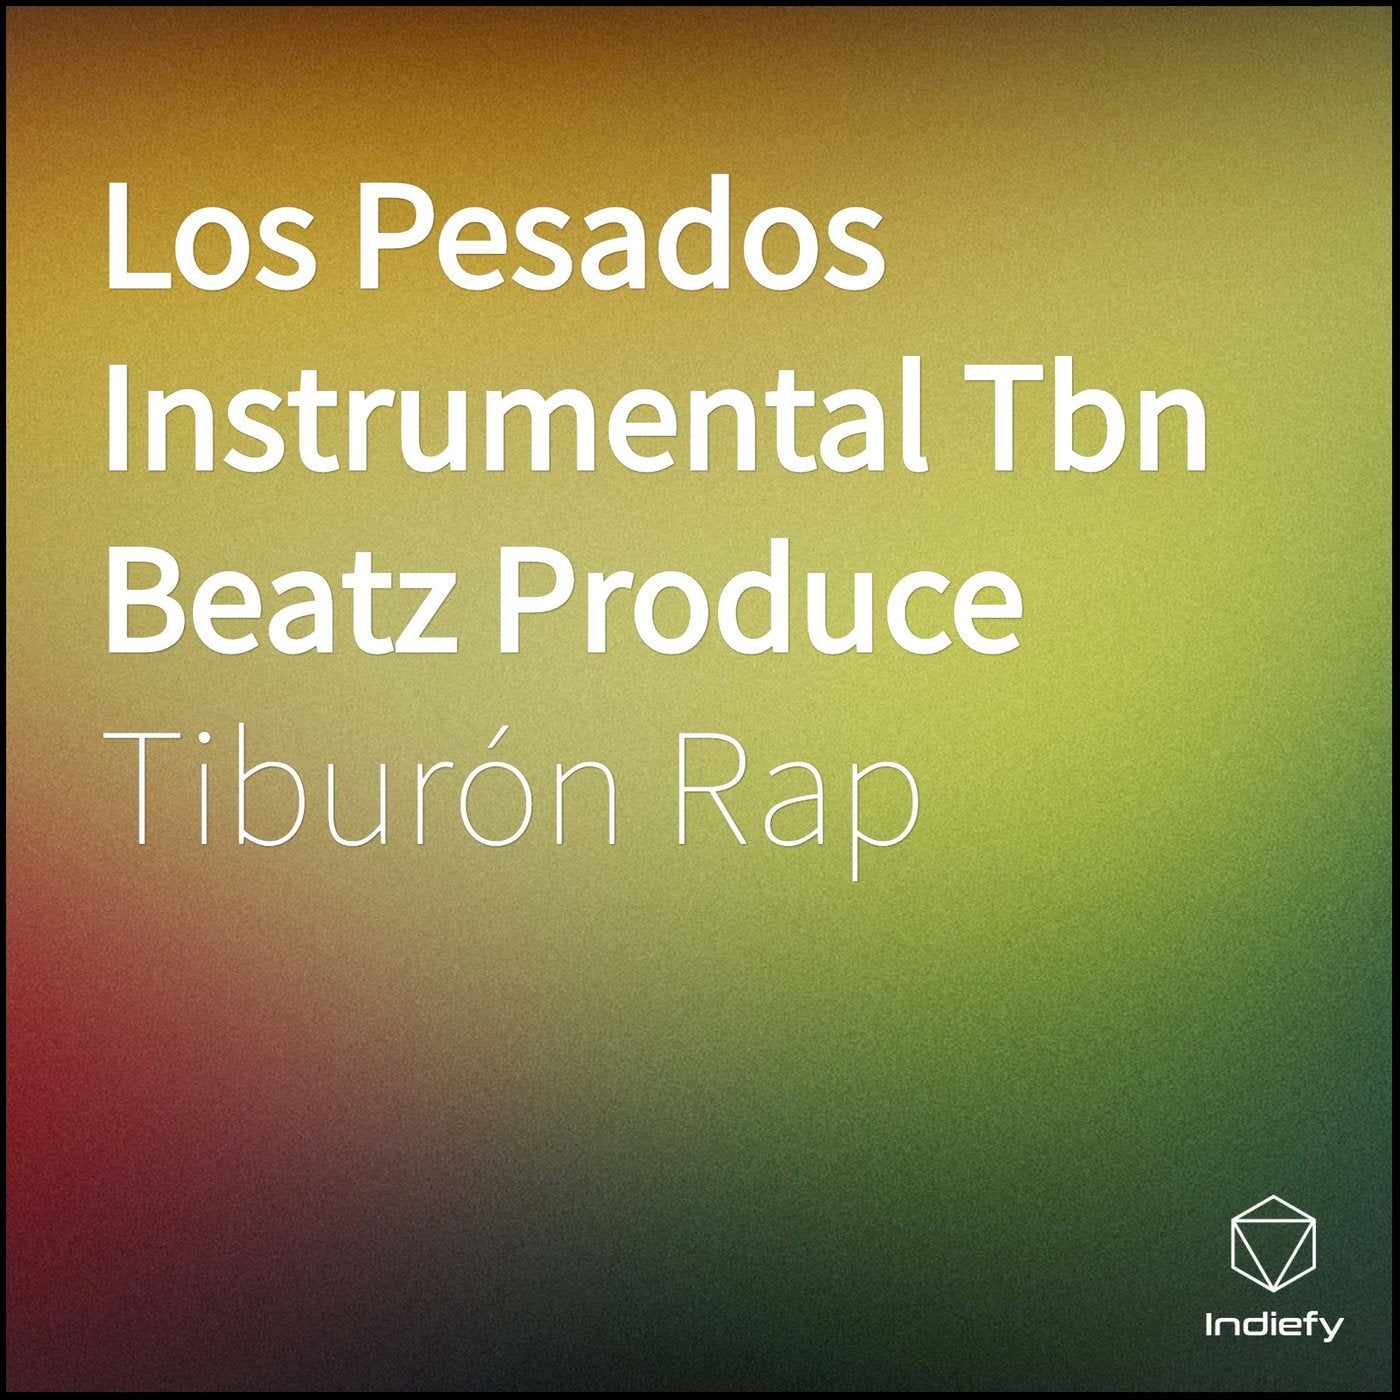 Los Pesados Instrumental Tbn Beatz Produce